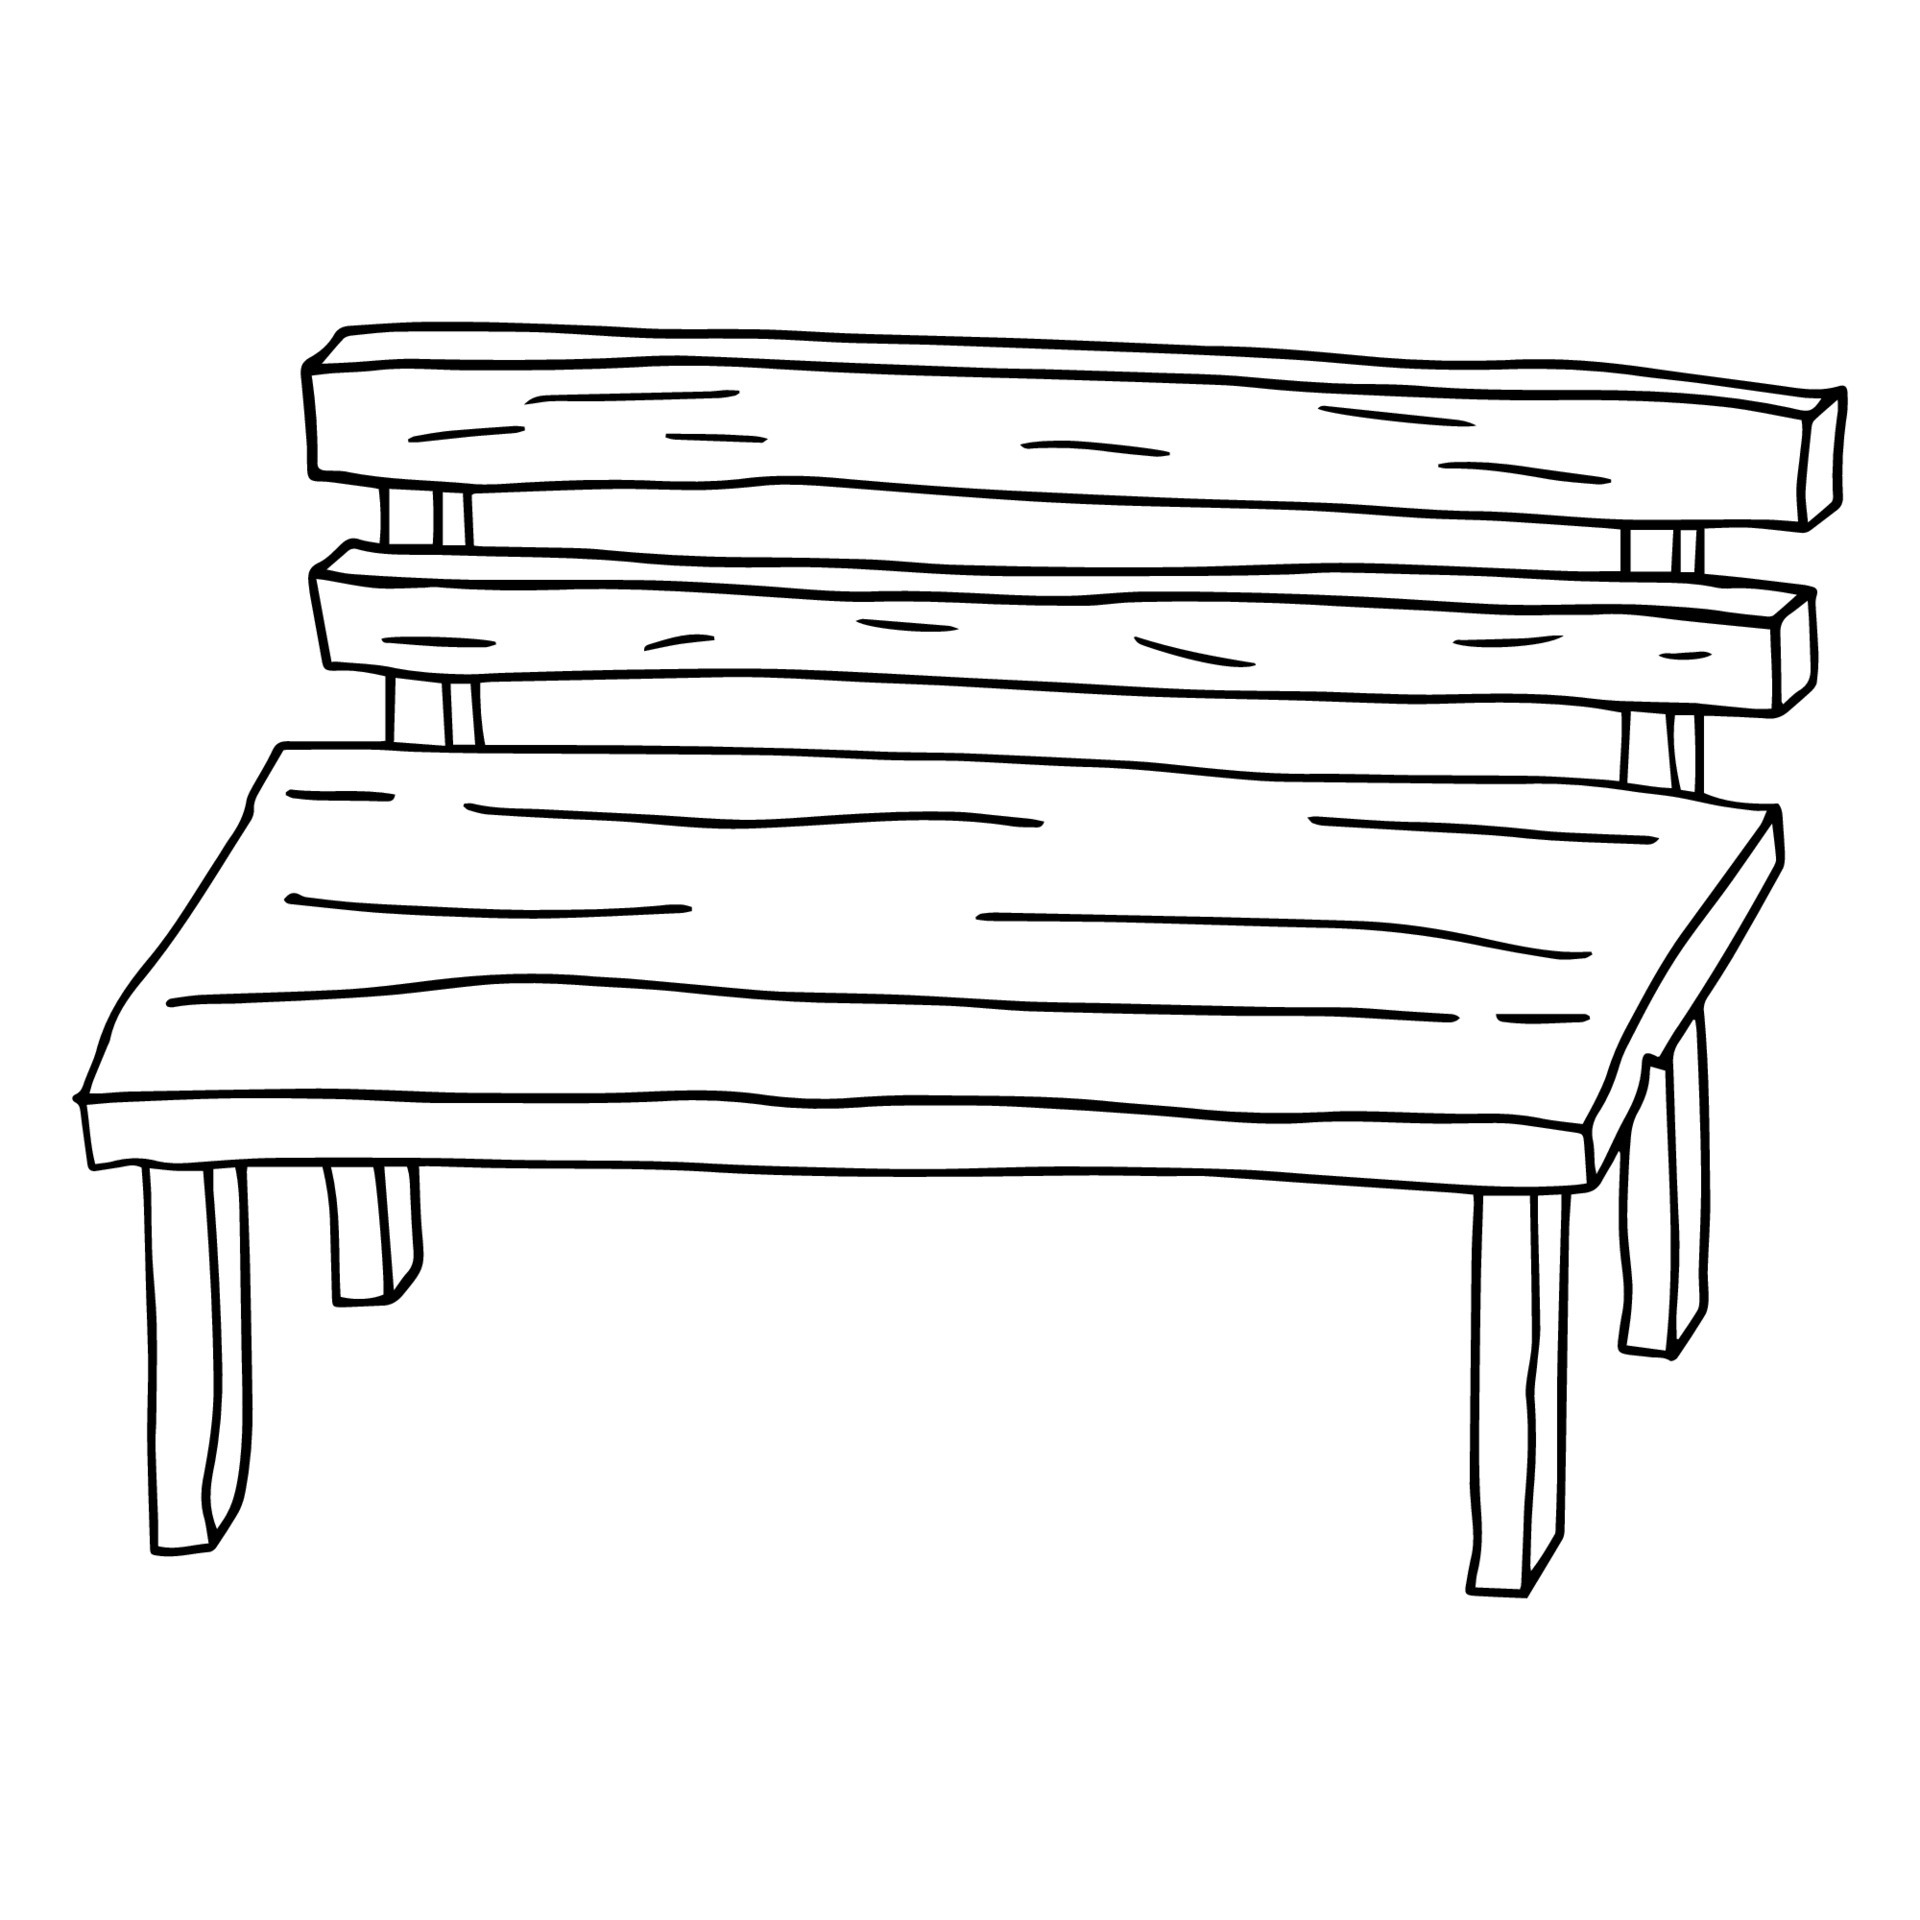 Cartoon hand drawn doodle wooden bench 4705943 Vector Art at Vecteezy